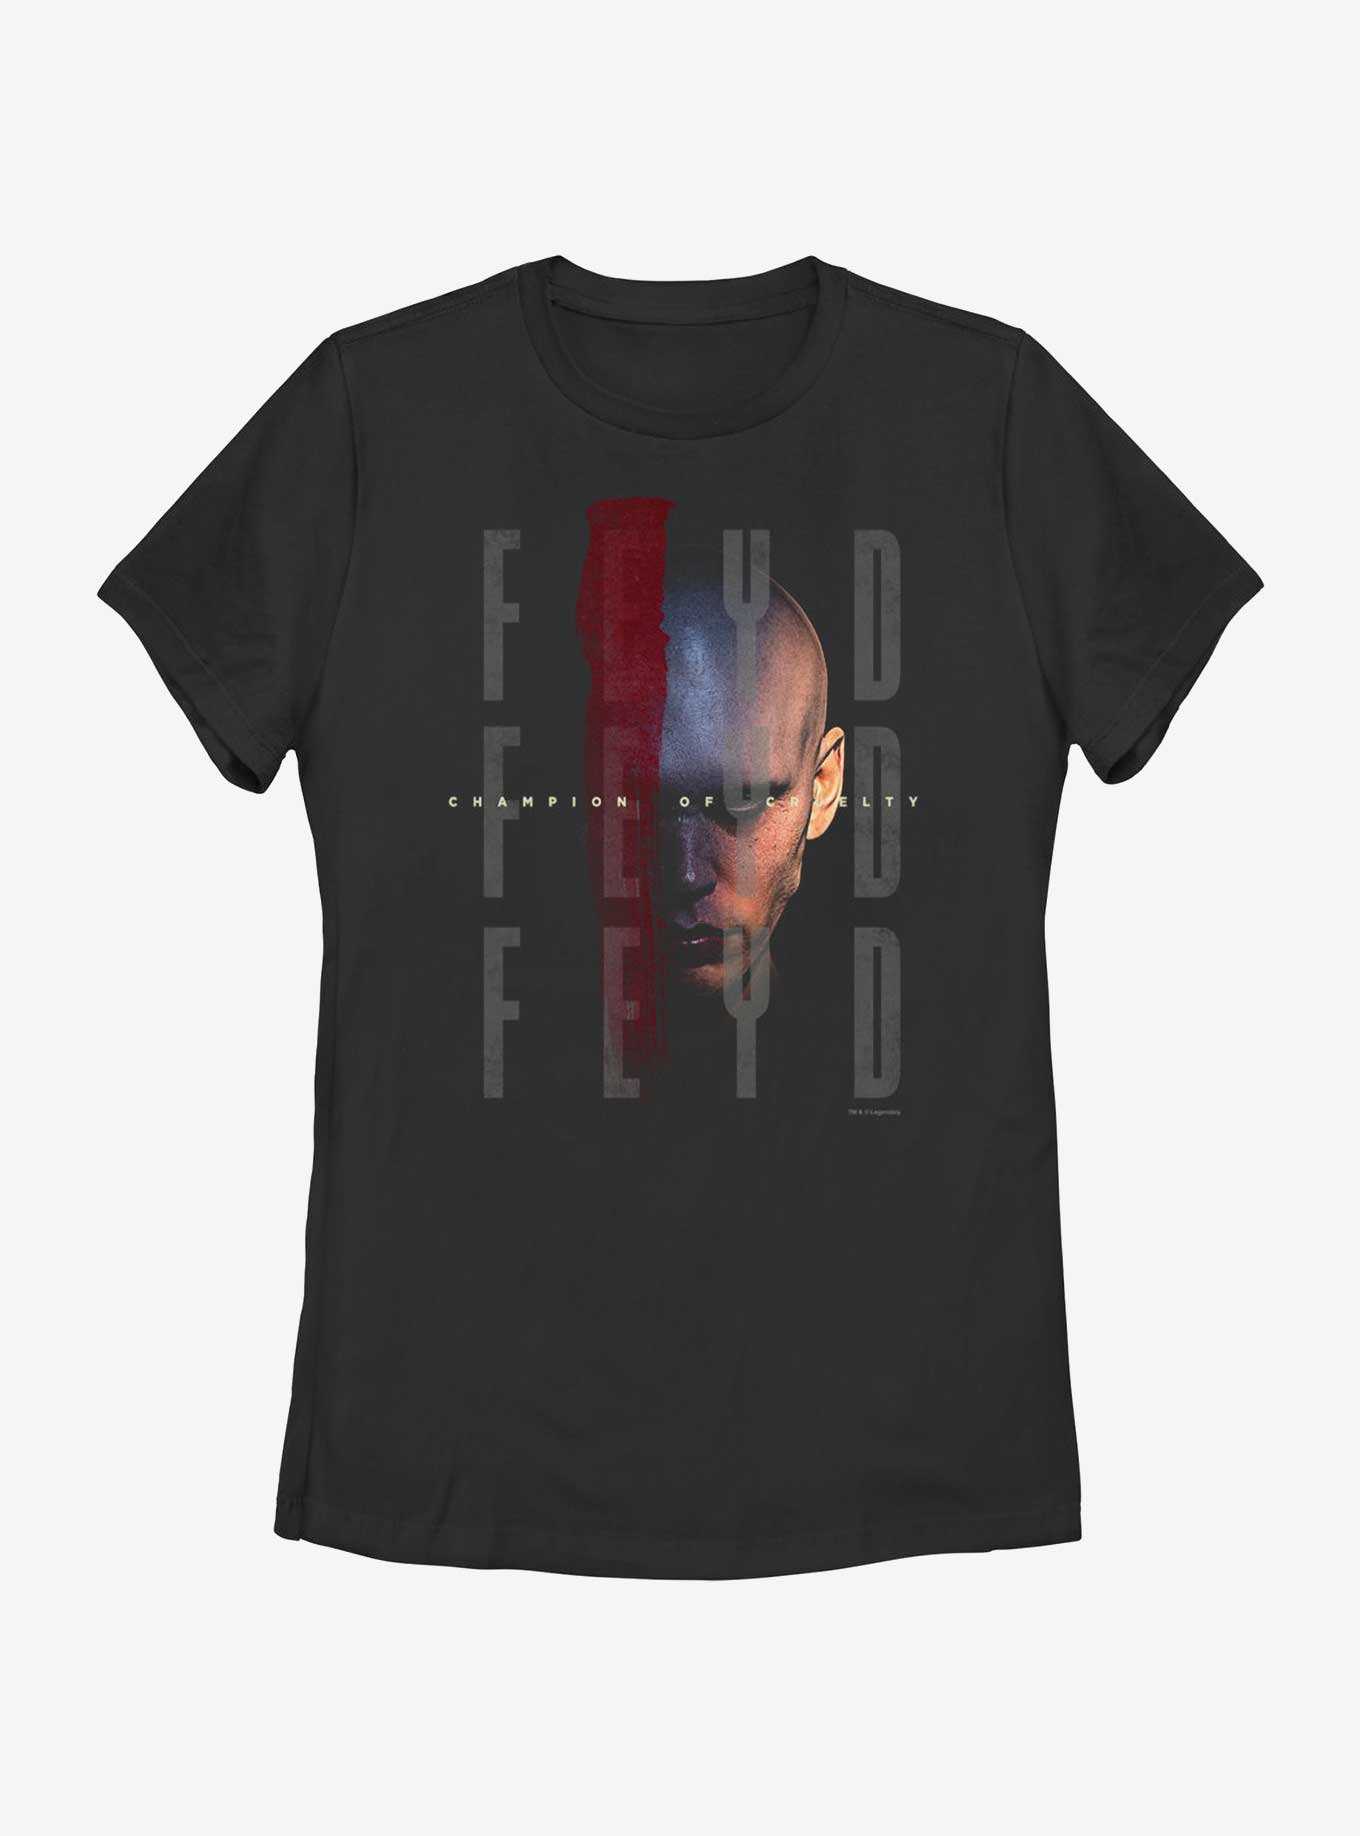 Dune Feyd Champion Of Cruelty Womens T-Shirt, , hi-res